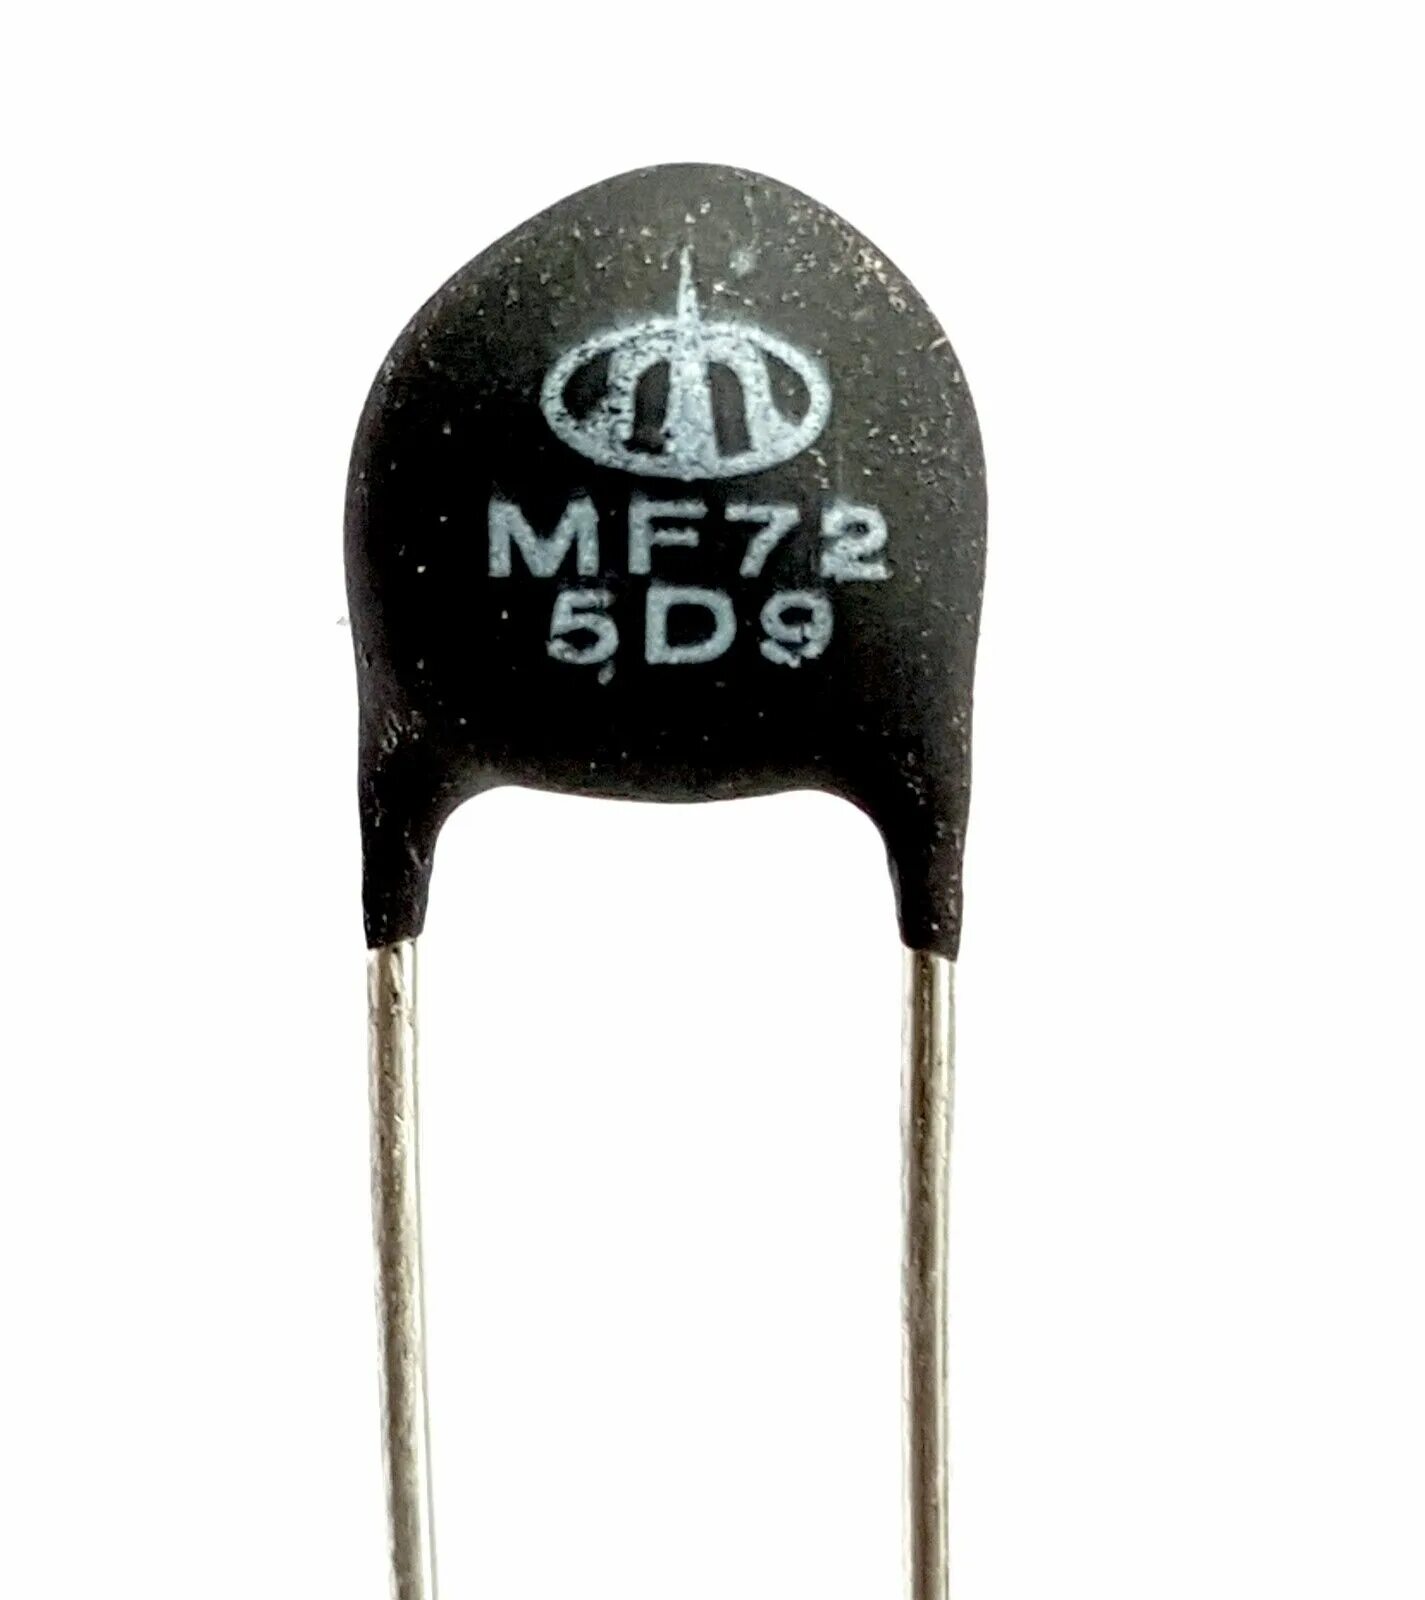 Ntc 5d 9. Термистор mf72 - 2 2rk. Термистор NTC 5d-9. Mf72 5d9 характеристики термистор. NTC 5d-9 даташит.